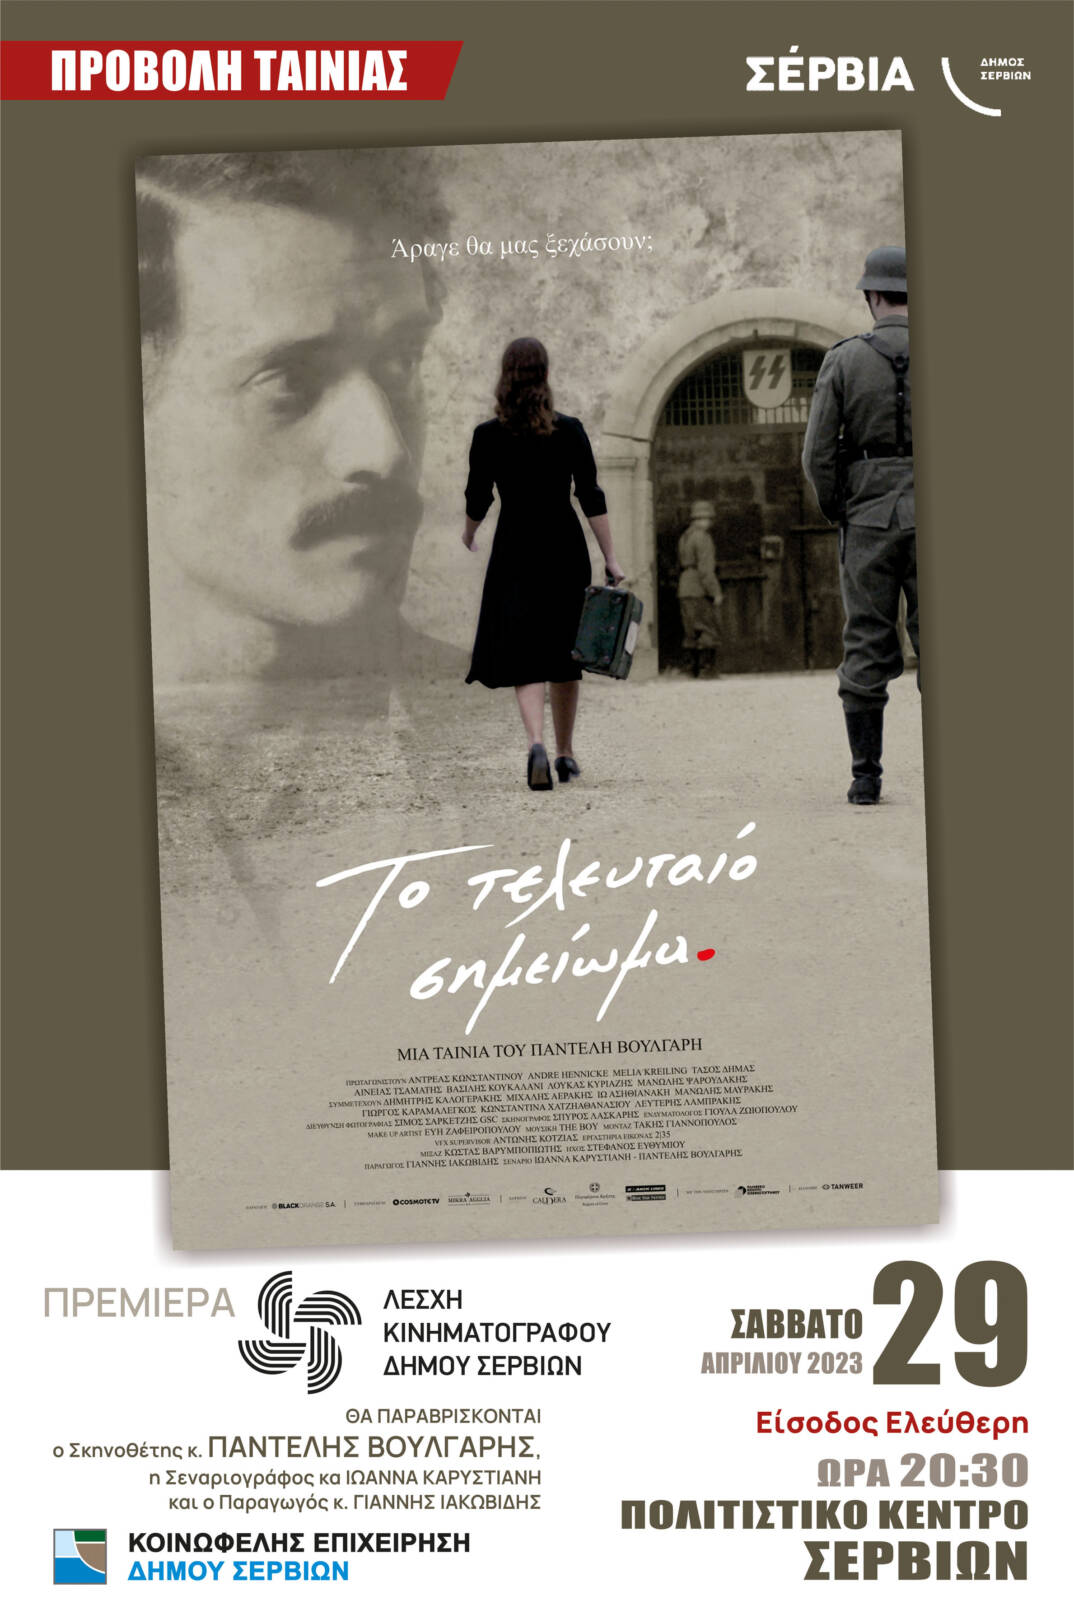 Προβολή ταινίας στο Πολιτιστικό Κέντρο Σερβίων το Σάββατο 29 Απριλίου